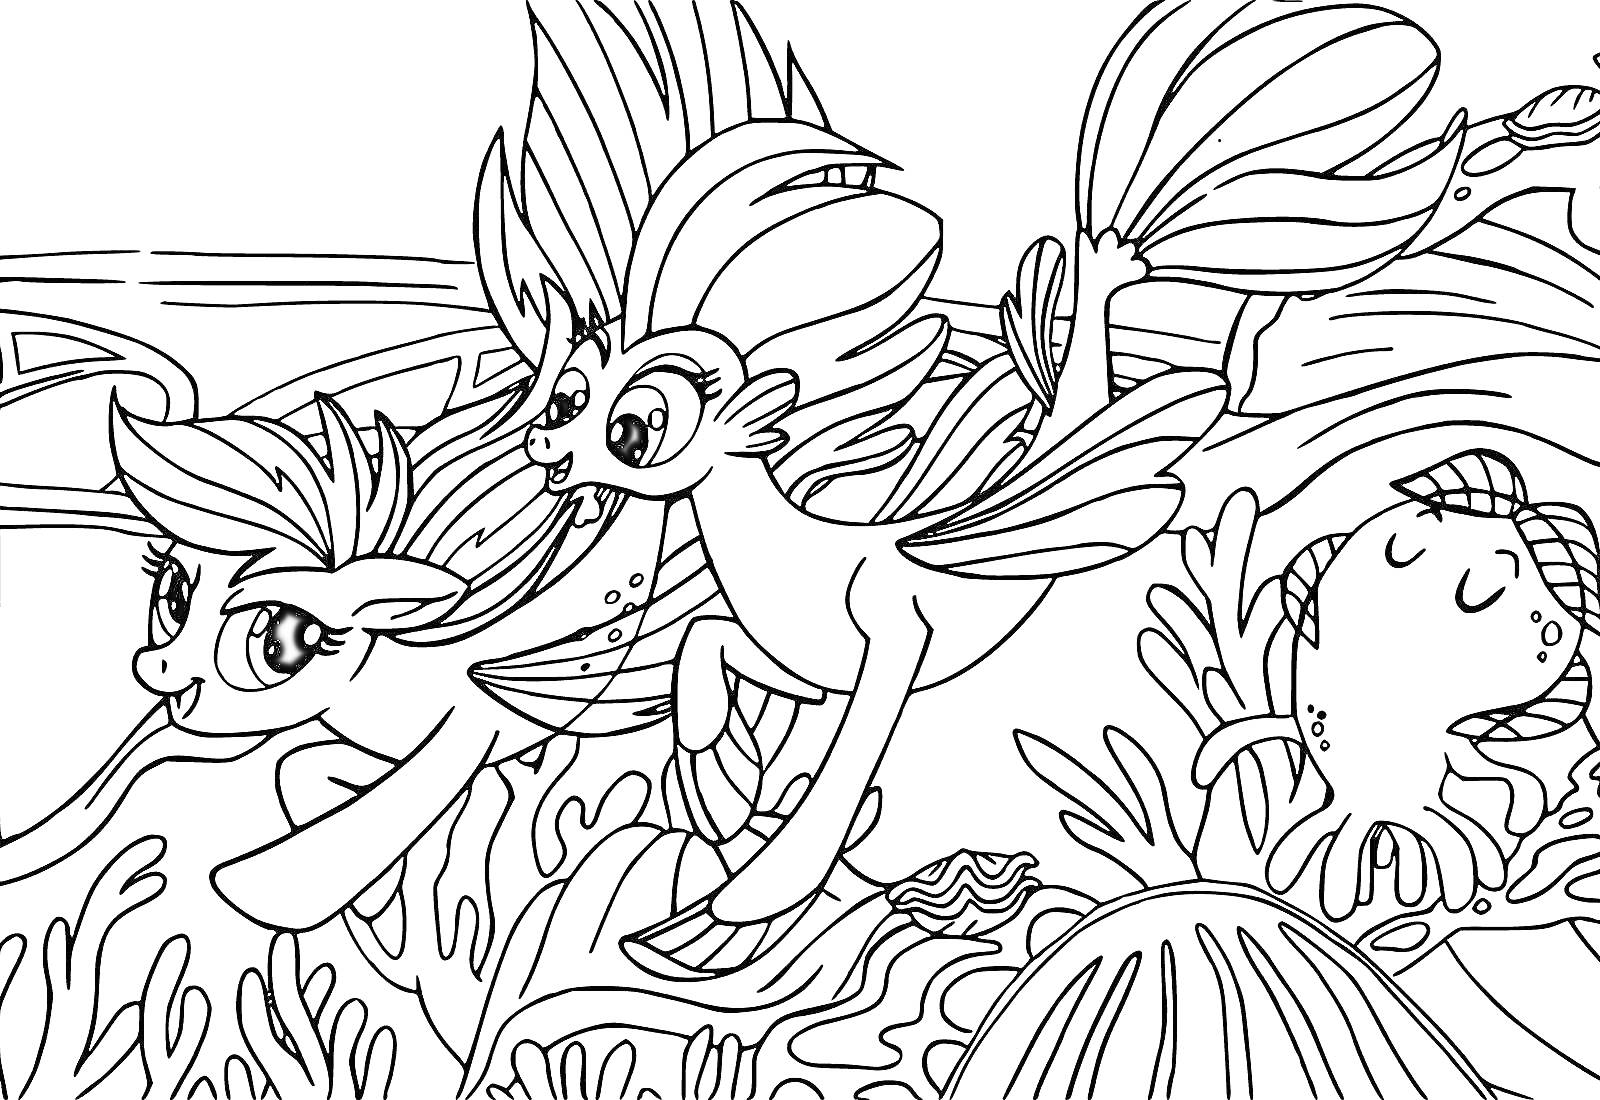 Раскраска Пони в подводном мире с осьминогом и растительностью